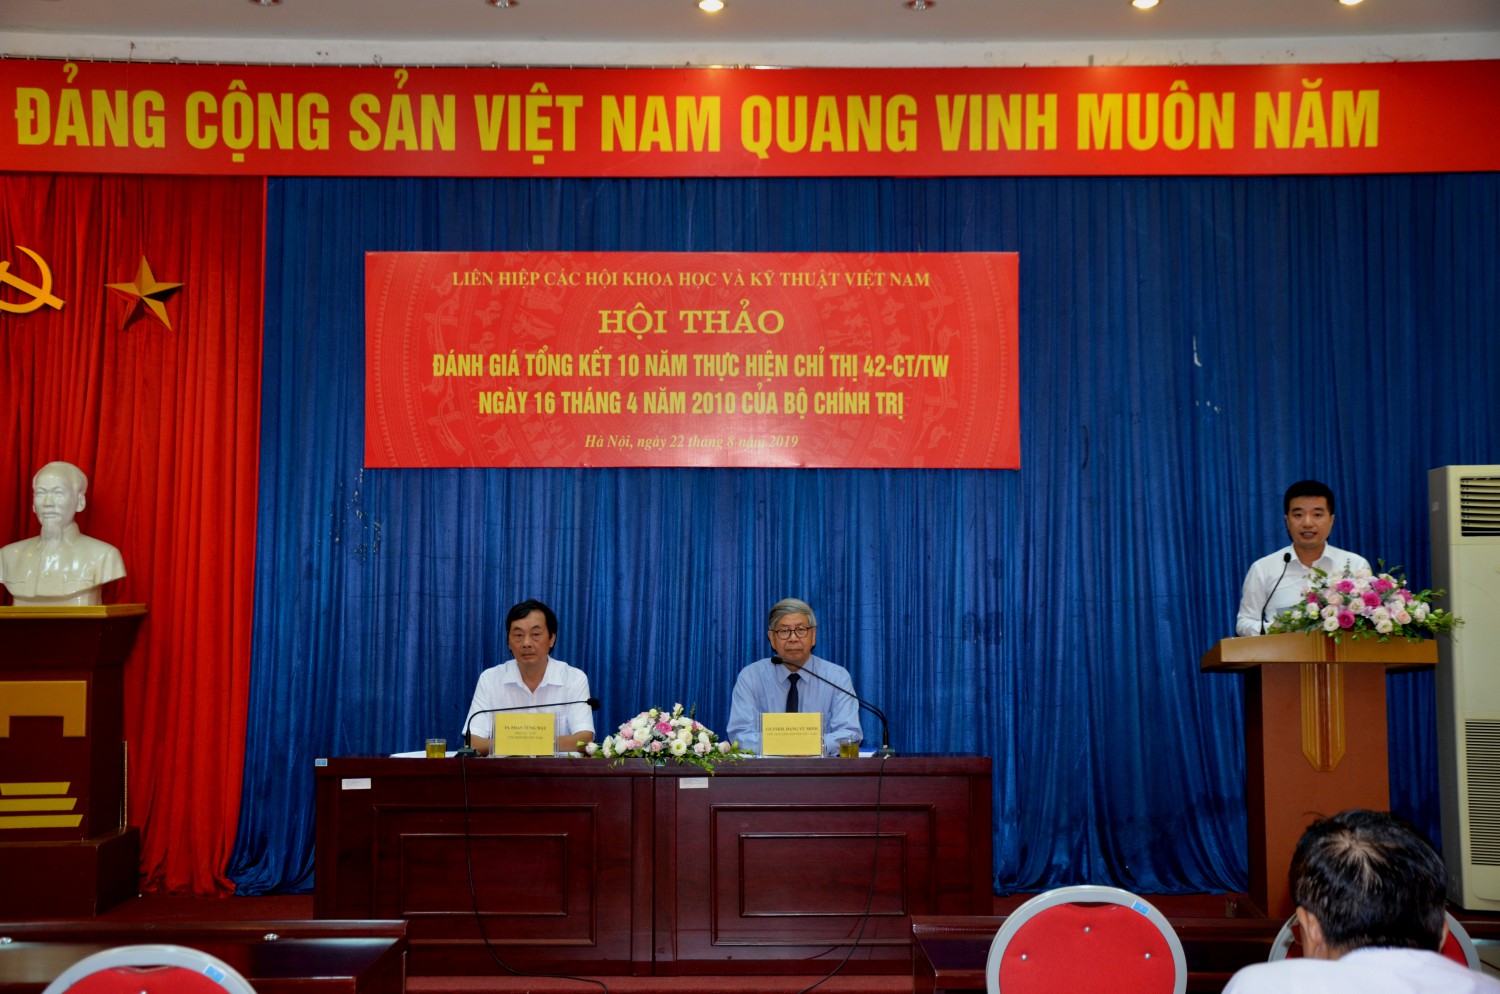 Liên hiệp Hội Việt Nam - 10 năm thực hiện Chỉ thị 42 của Bộ Chính trị